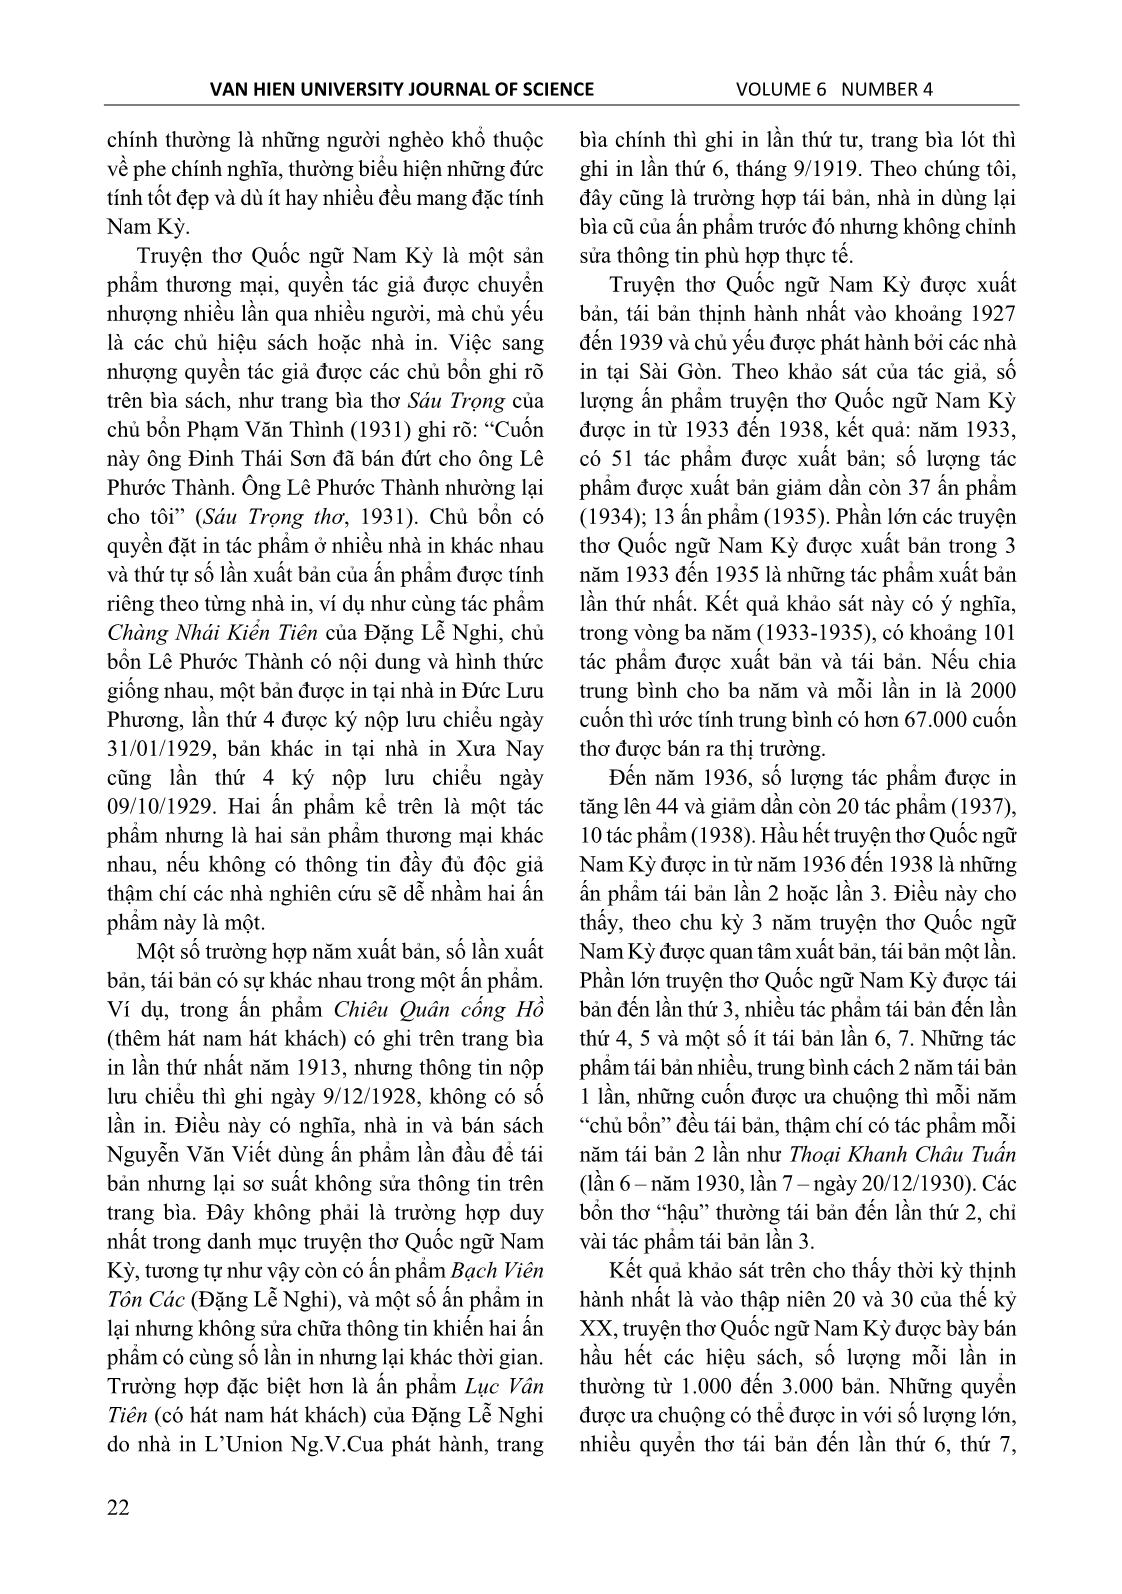 Truyện thơ Quốc ngữ Nam kỳ – Một loại hình văn chương bị lãng quên trang 6